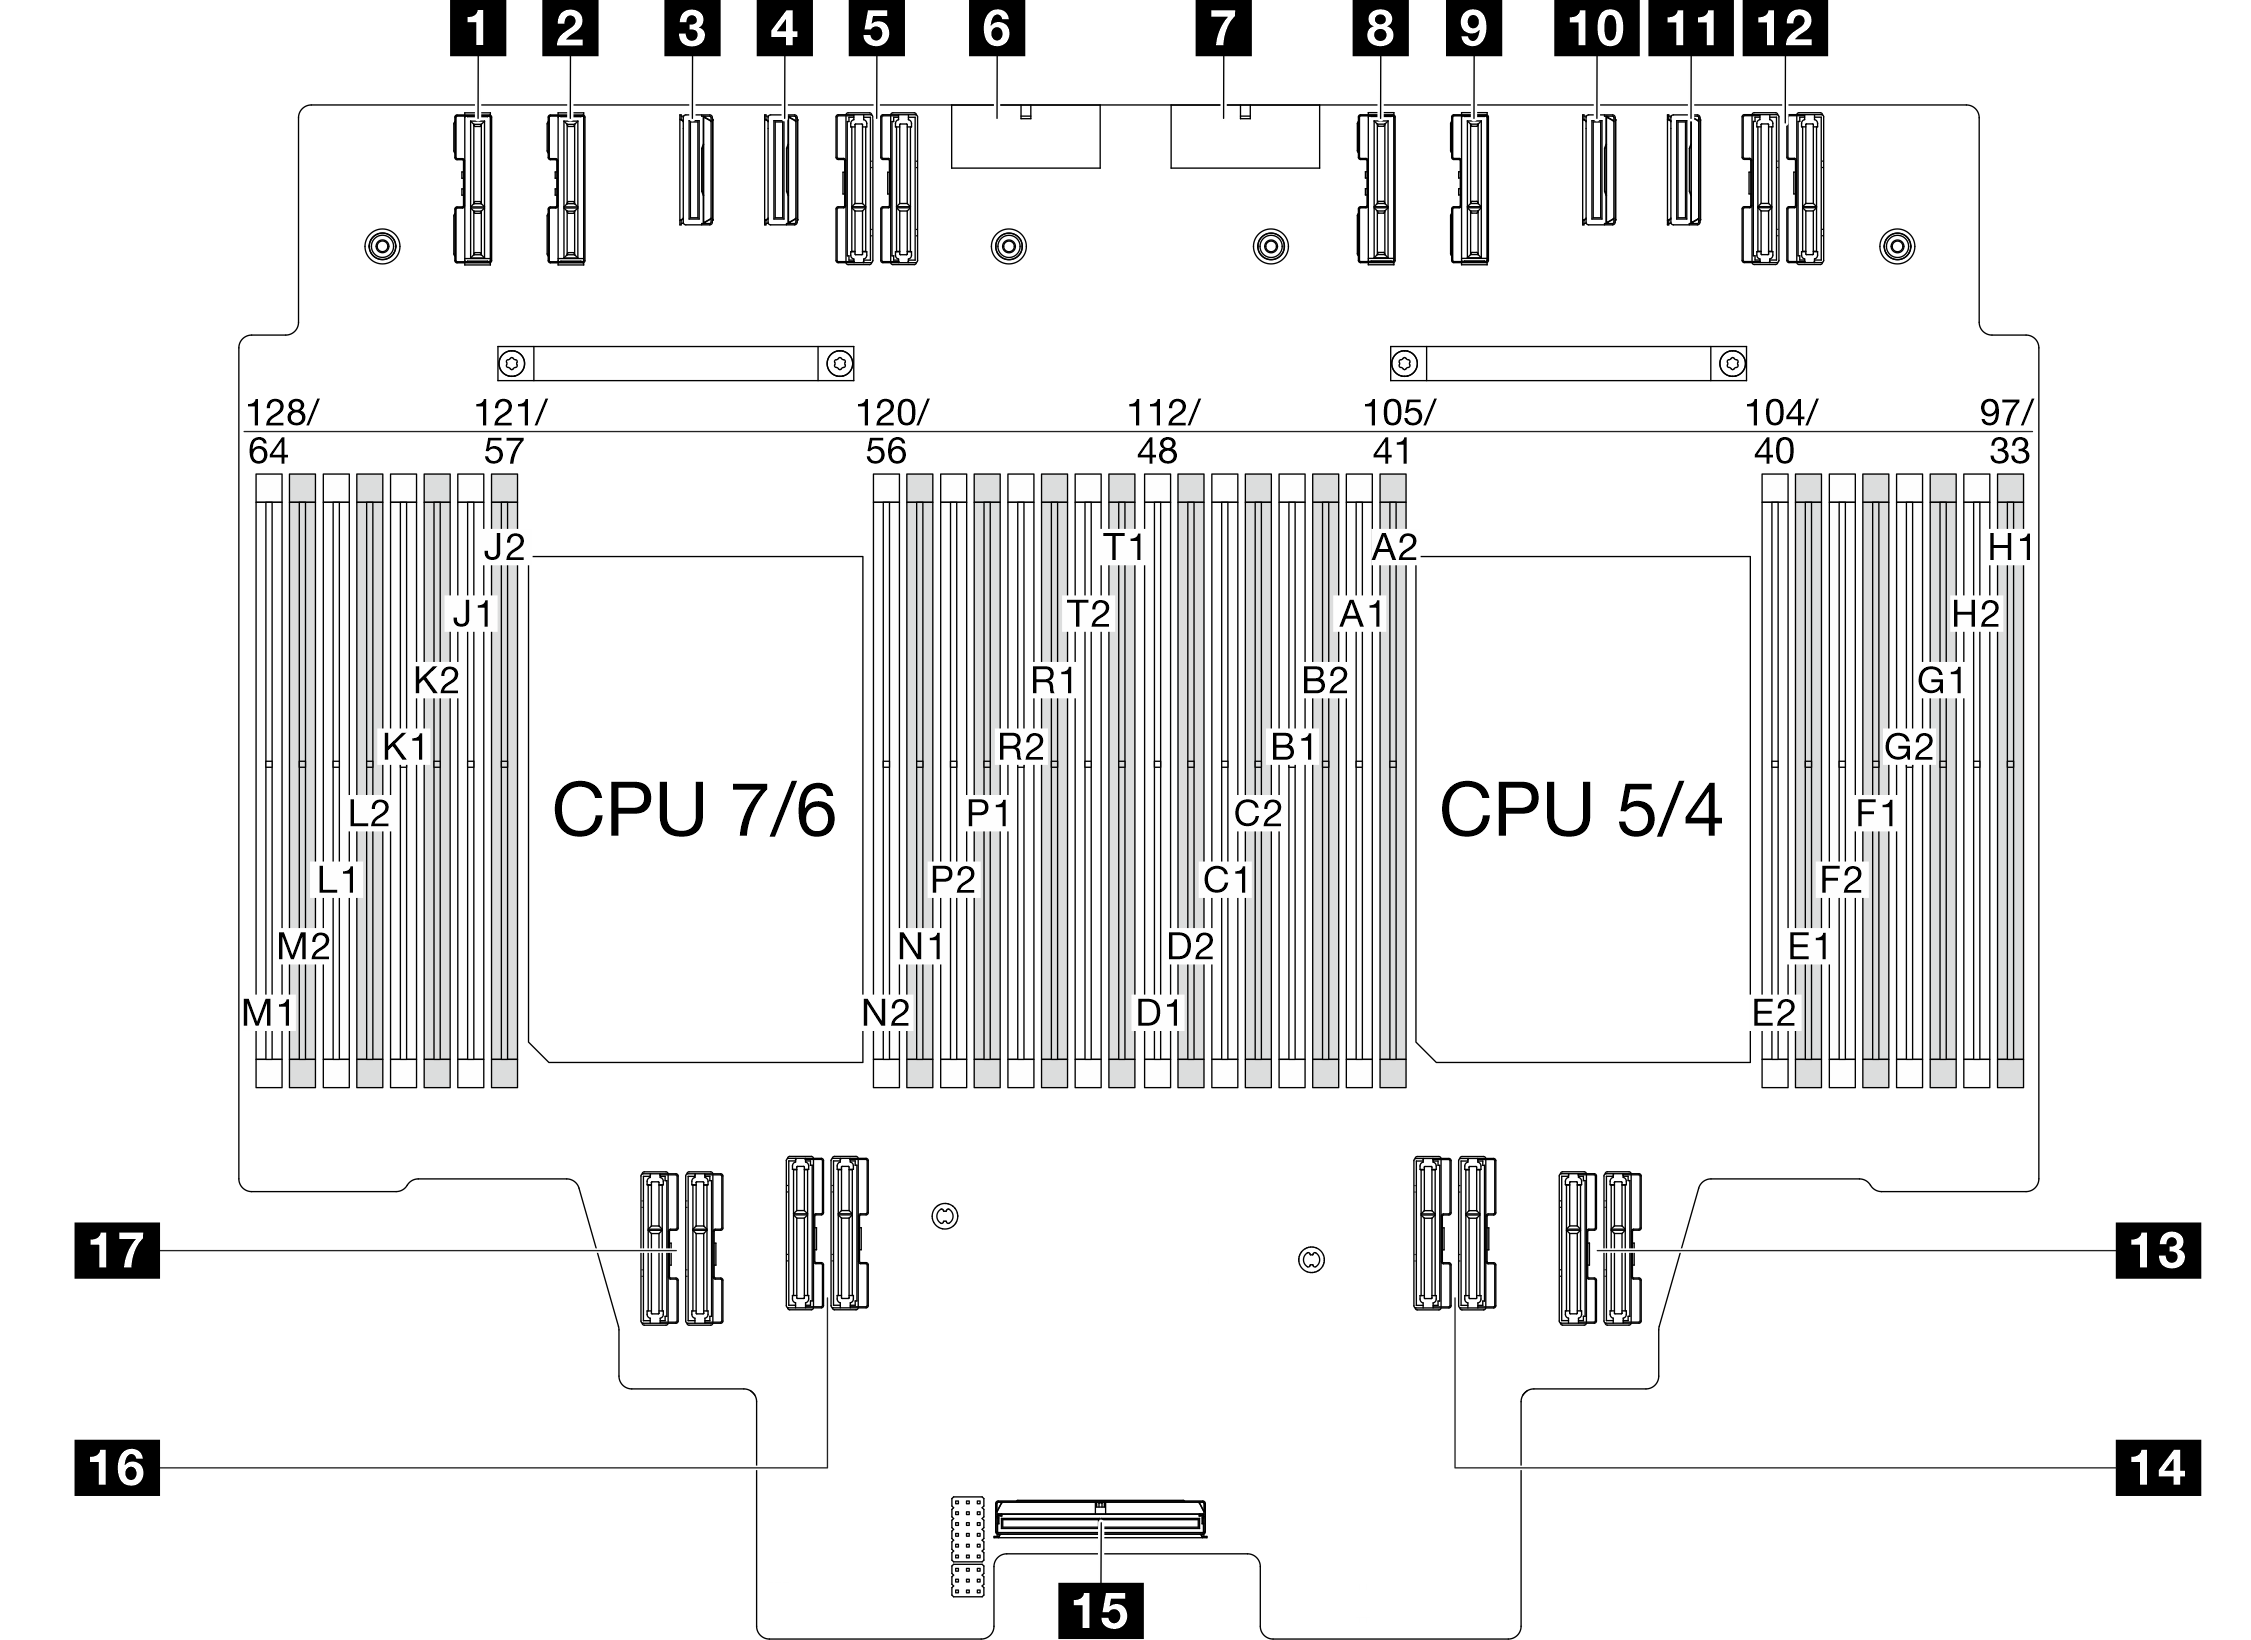 Upper processor board (CPU BD) connectors